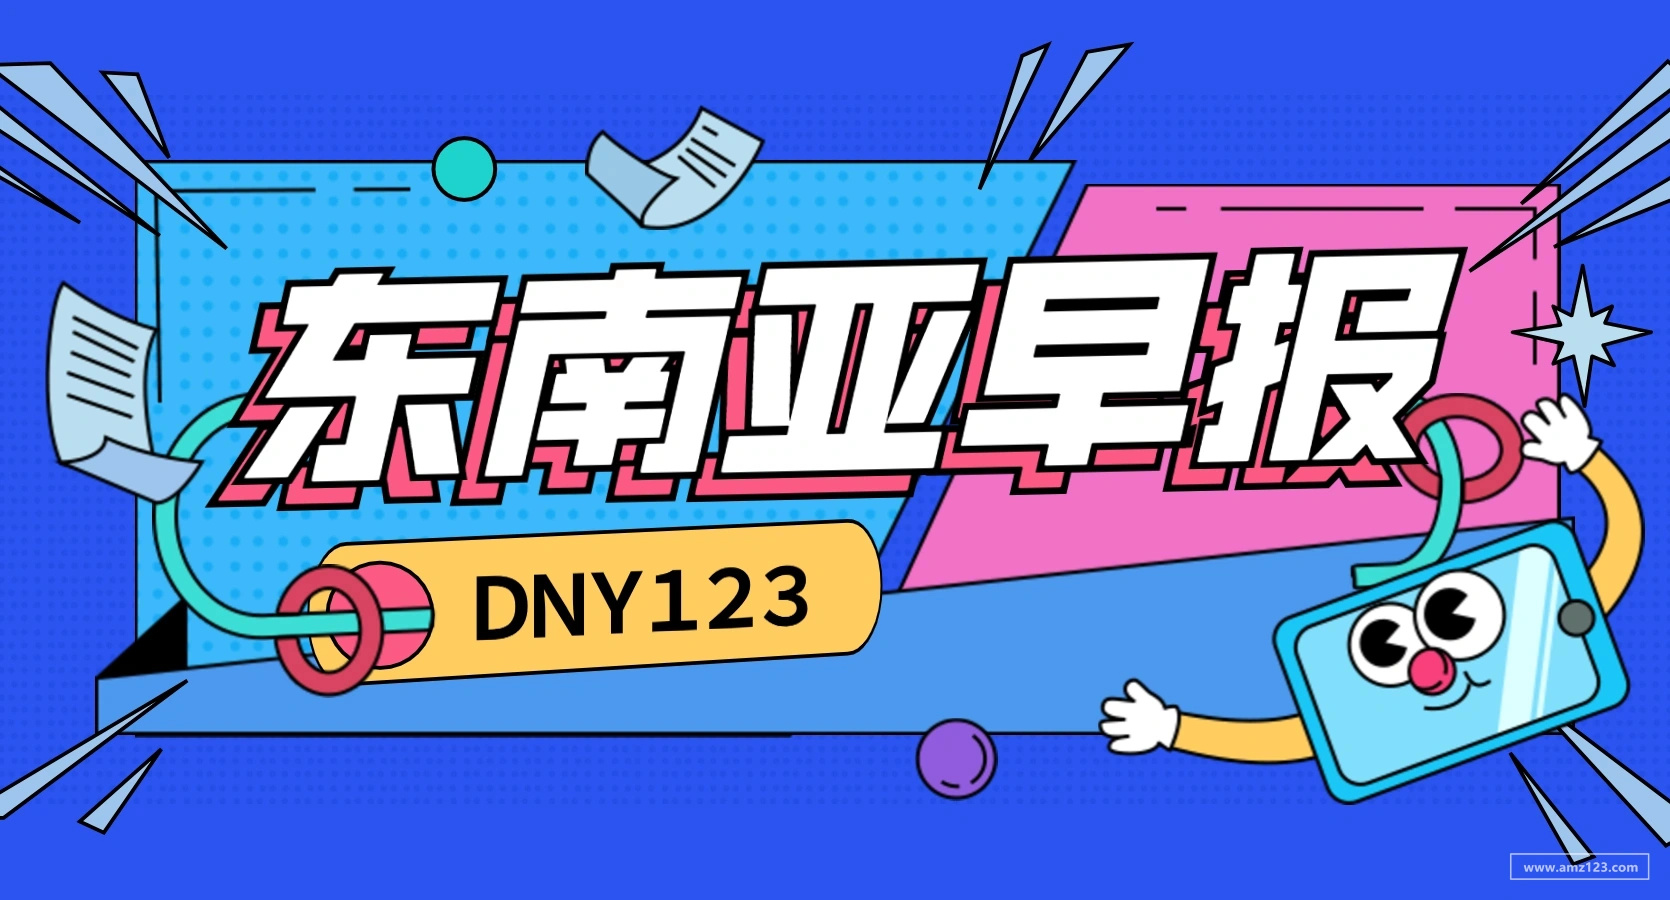 【DNY123跨境早报】东南亚网约车巨头Grab将于12月2日上市，Shopee印尼站推出2021时装周活动